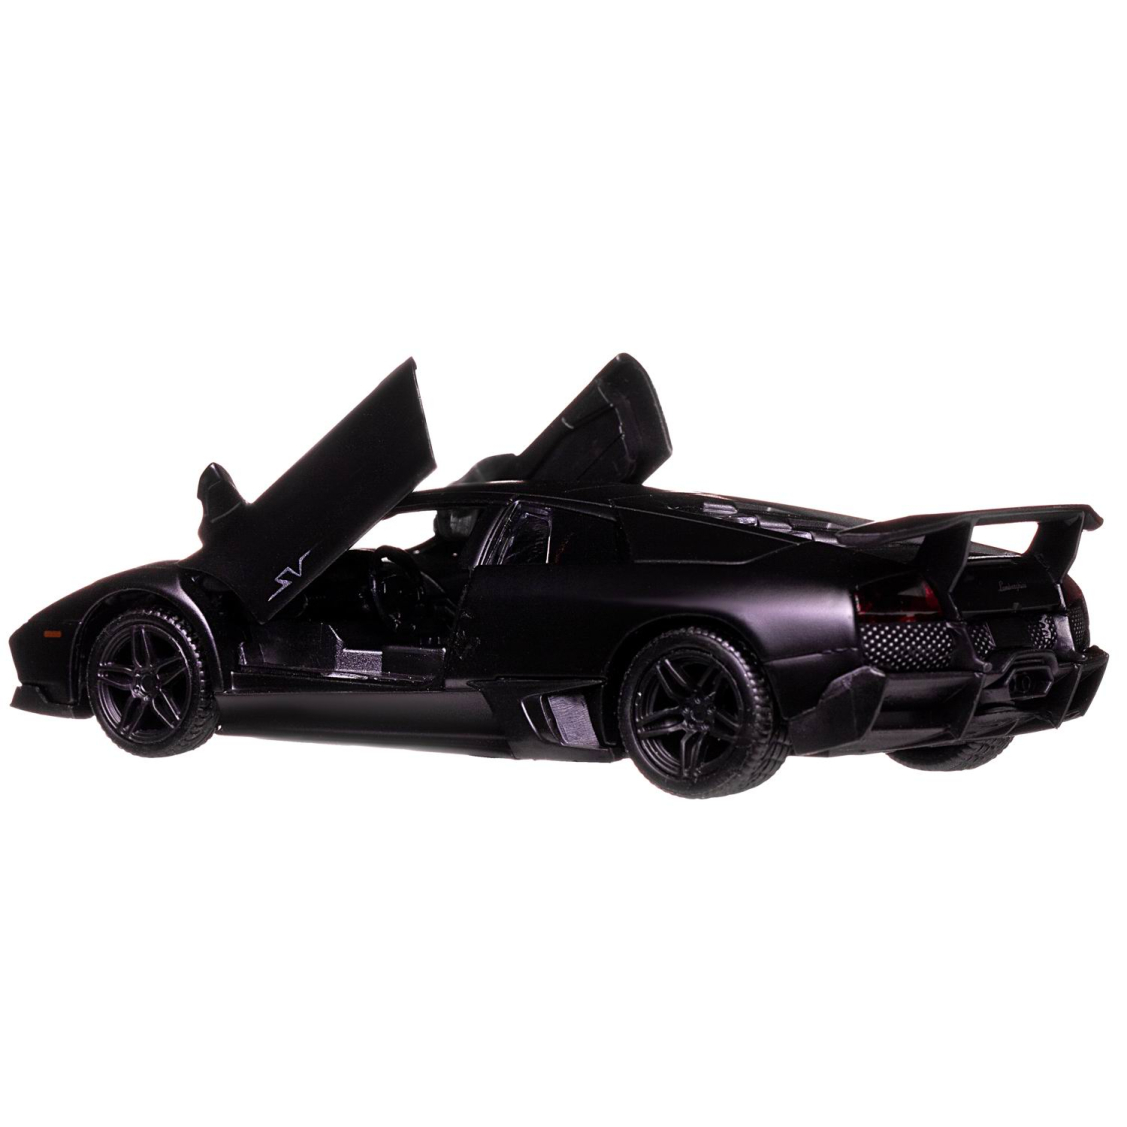 Машинка металлическая Uni-Fortune RMZ City 1:32 Lamborghini Murcielago LP670-4 , инерционная, черный матовый цвет, 16.5 x 7.5 x 7 см